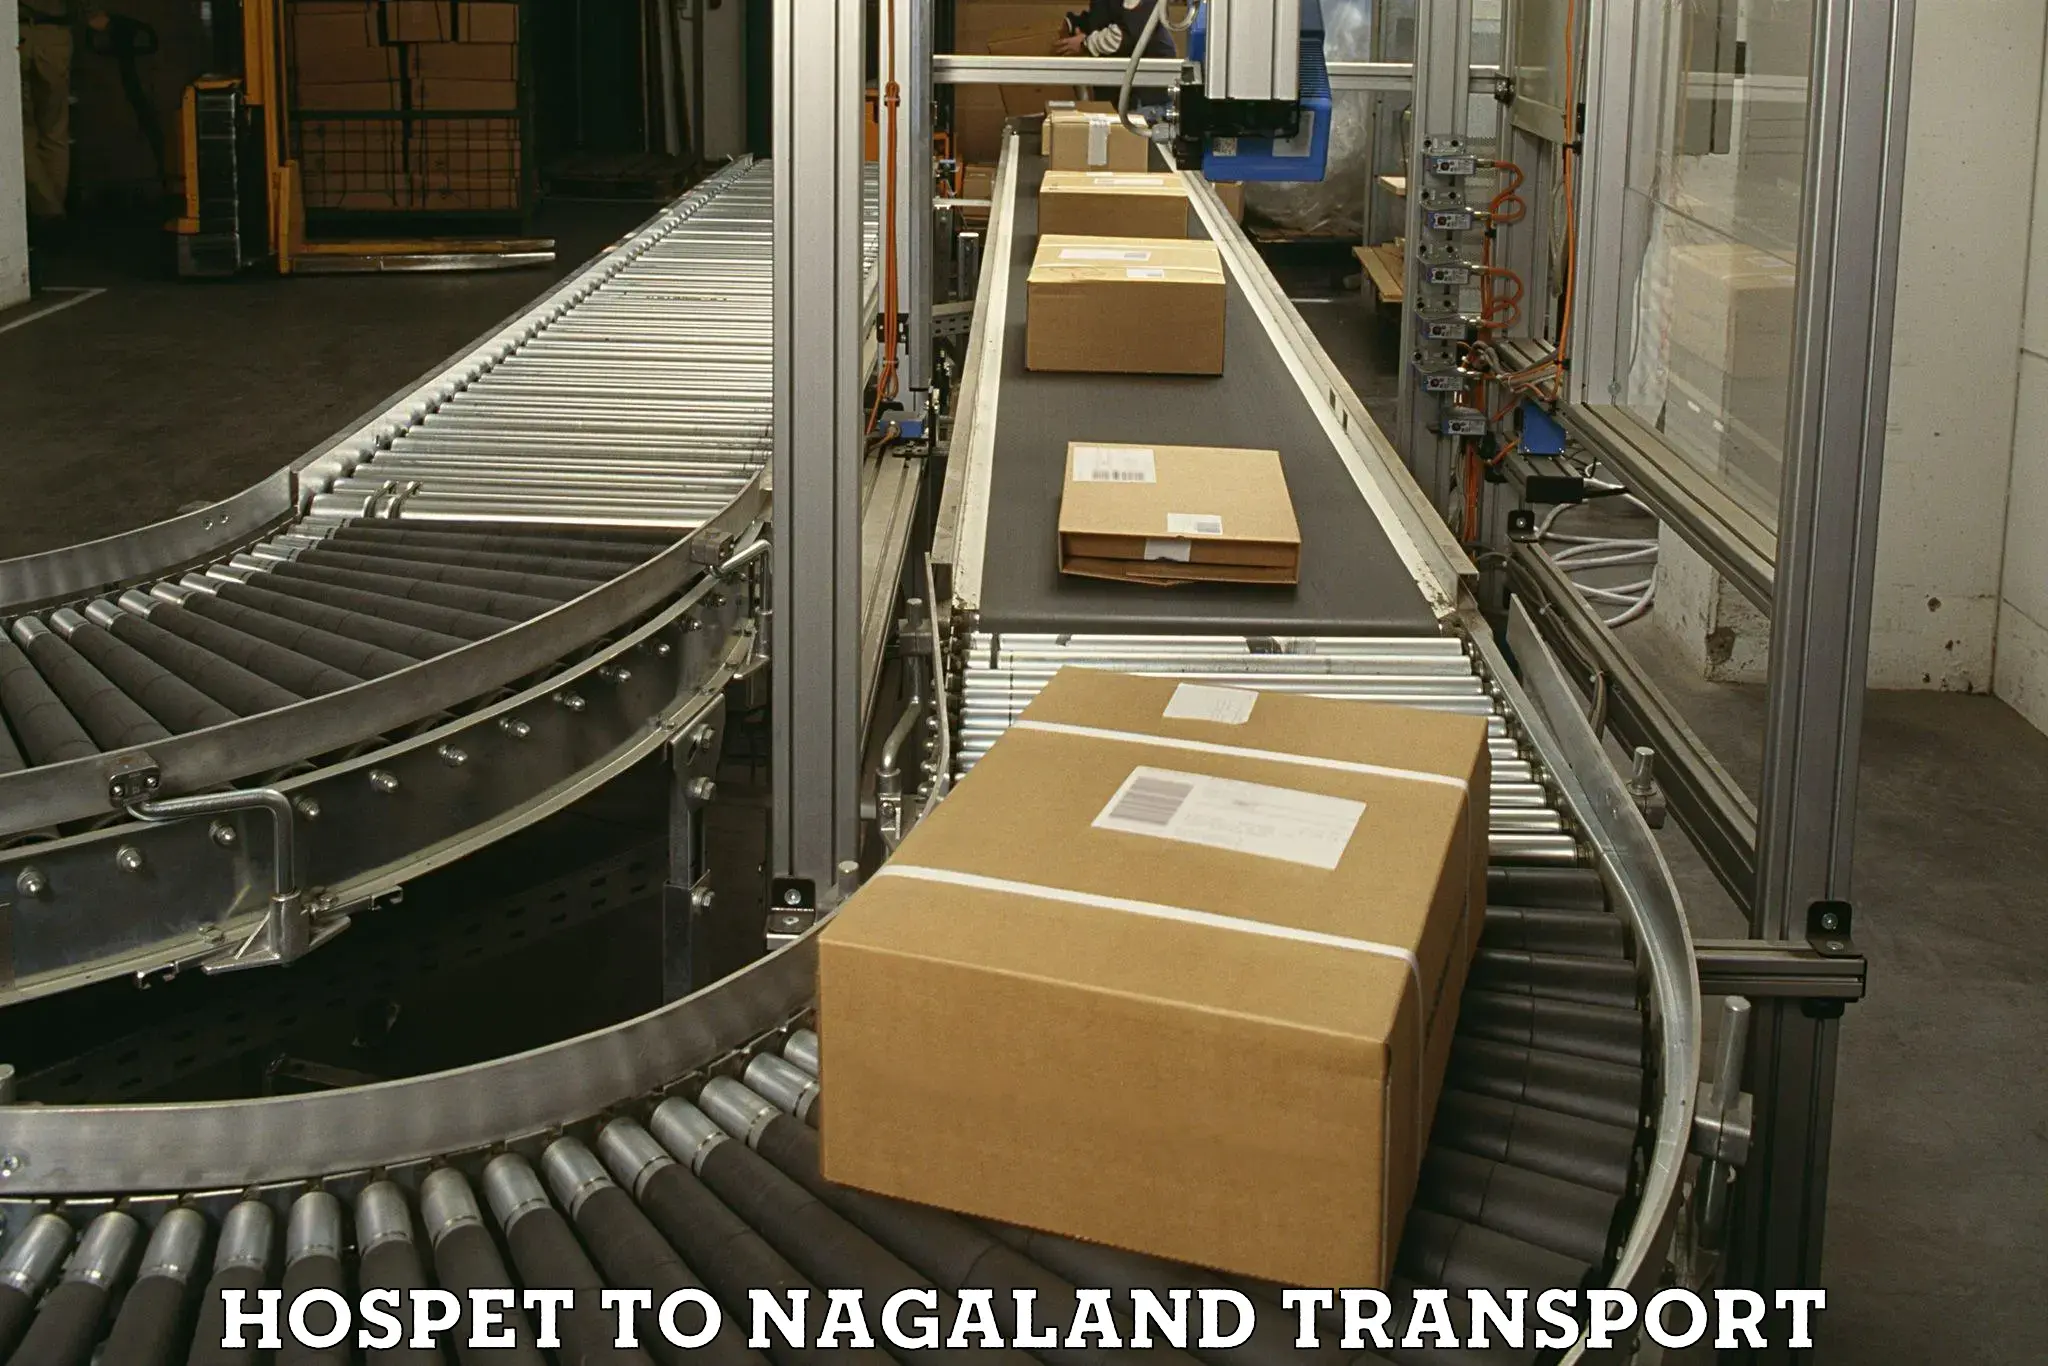 Commercial transport service Hospet to Nagaland